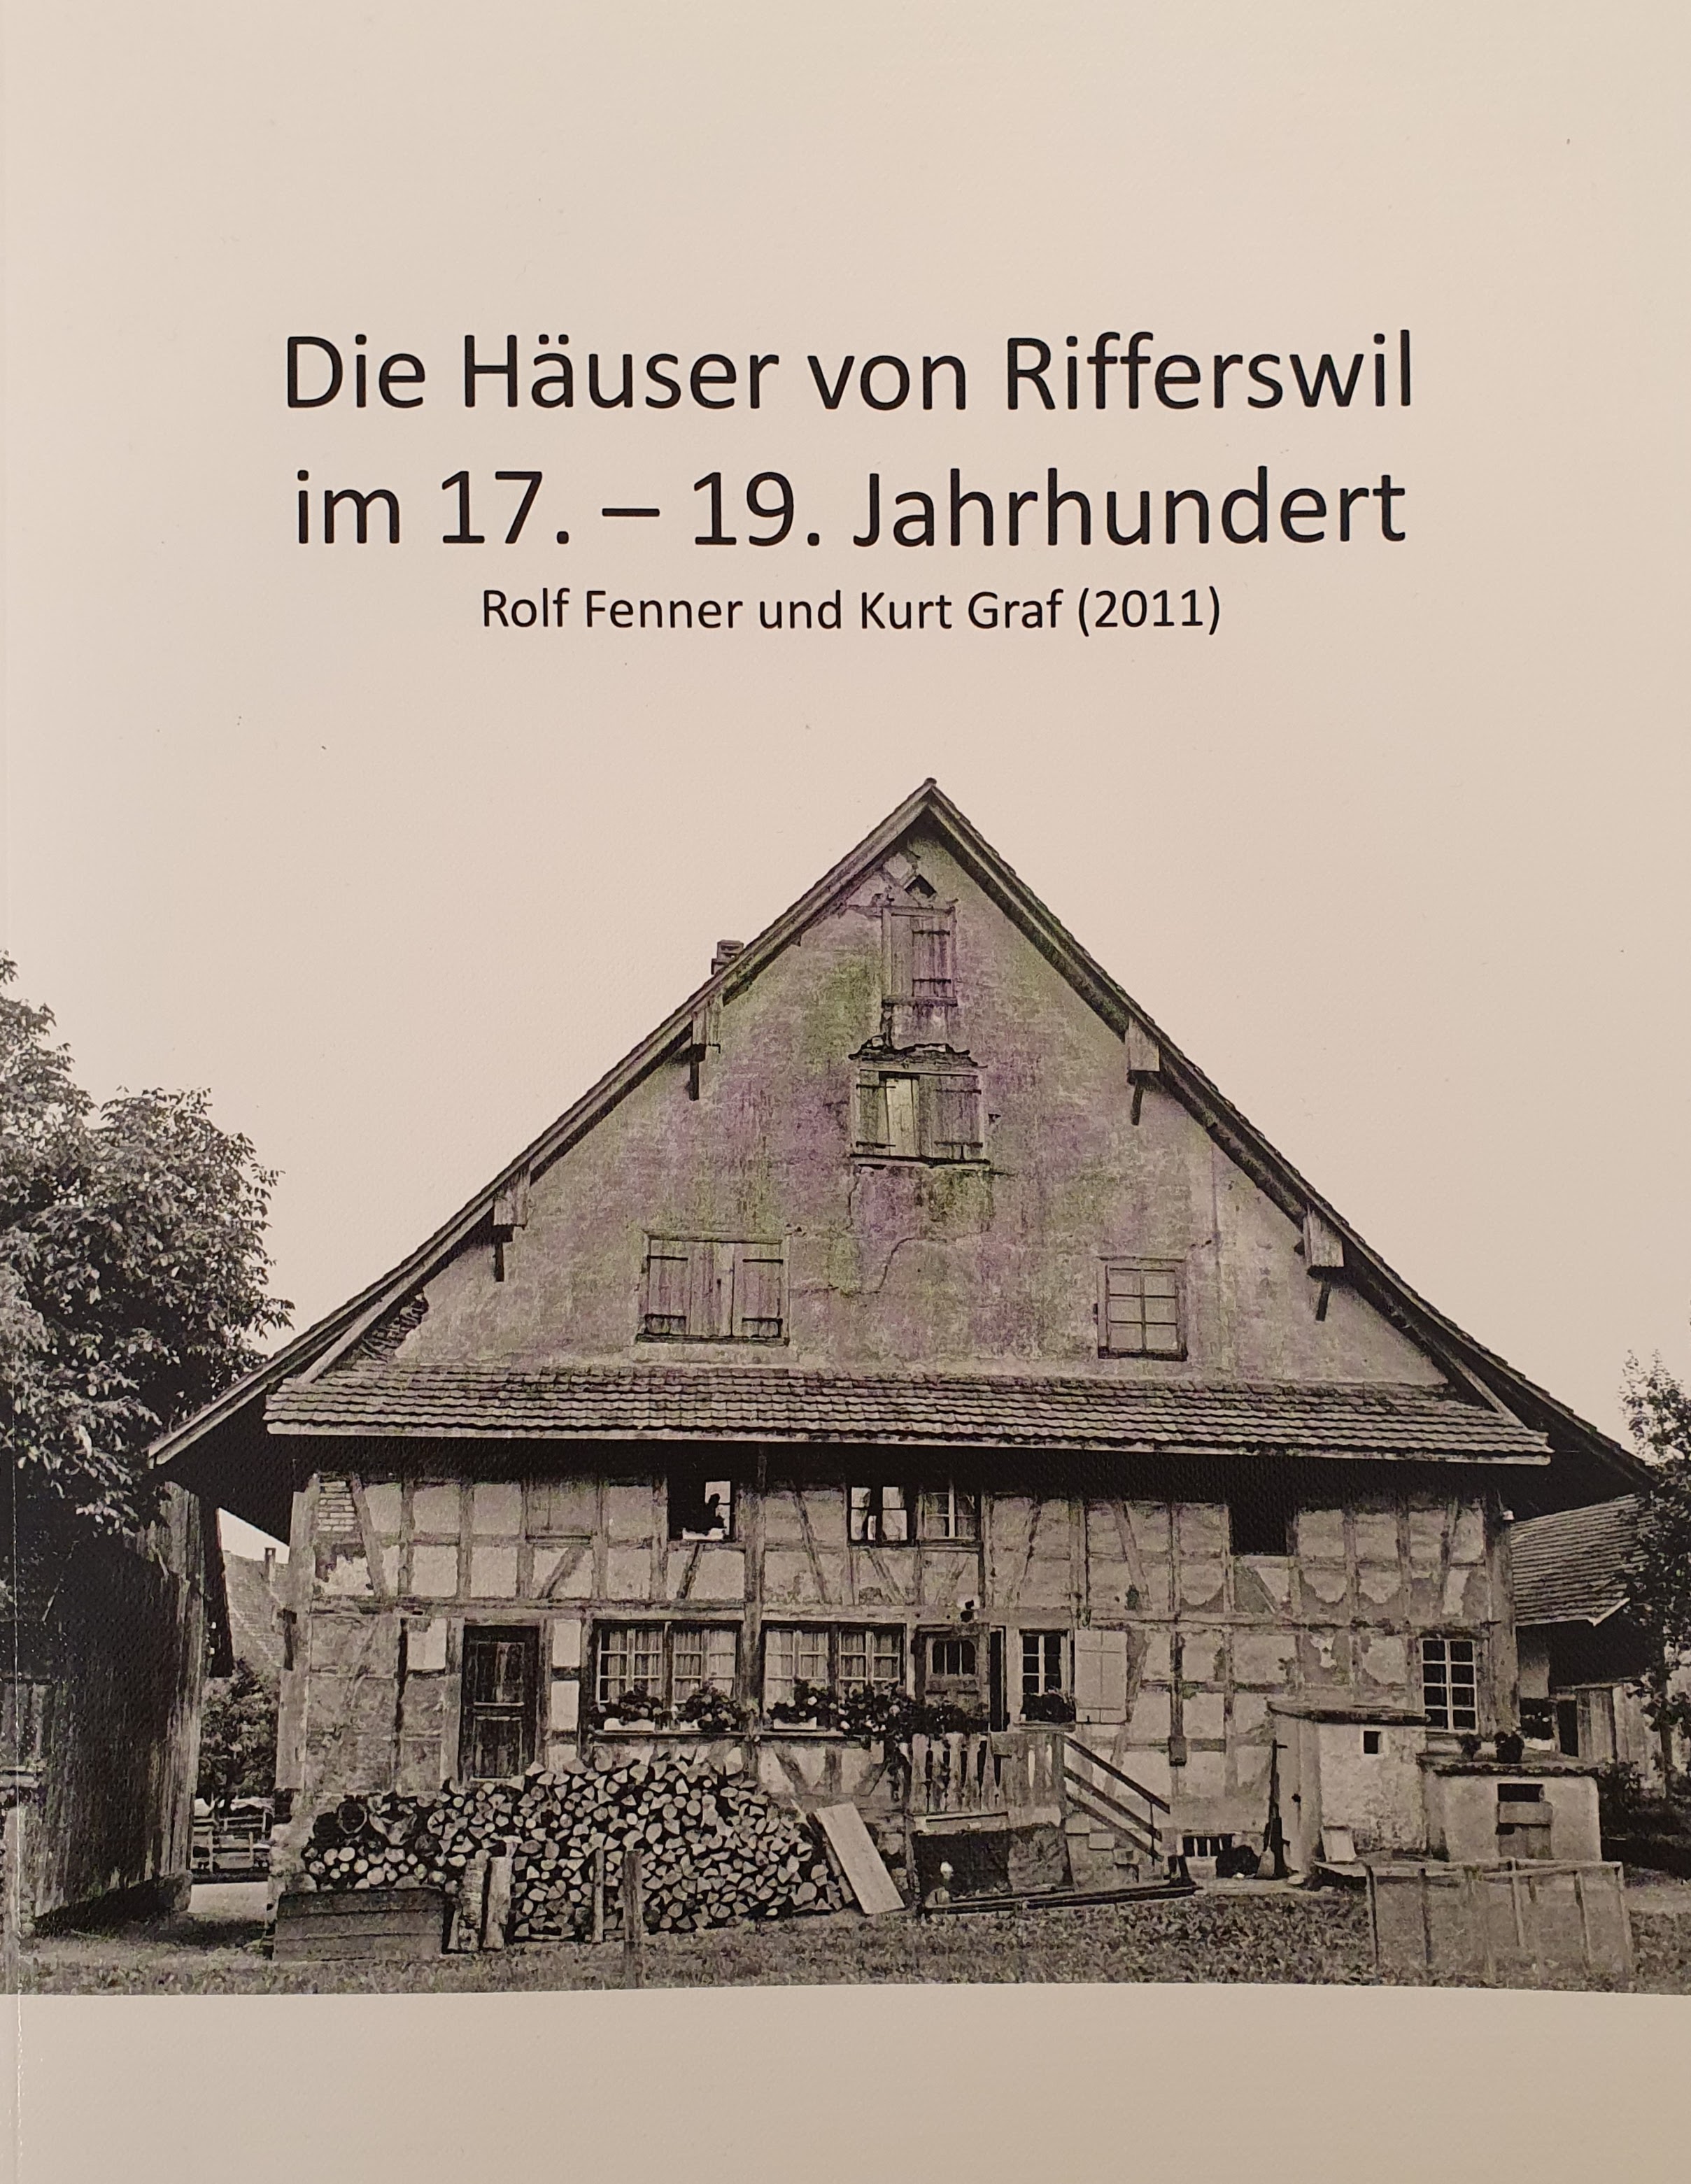 Die Häuser von Rifferswil im 17. - 19. Jahrhundert